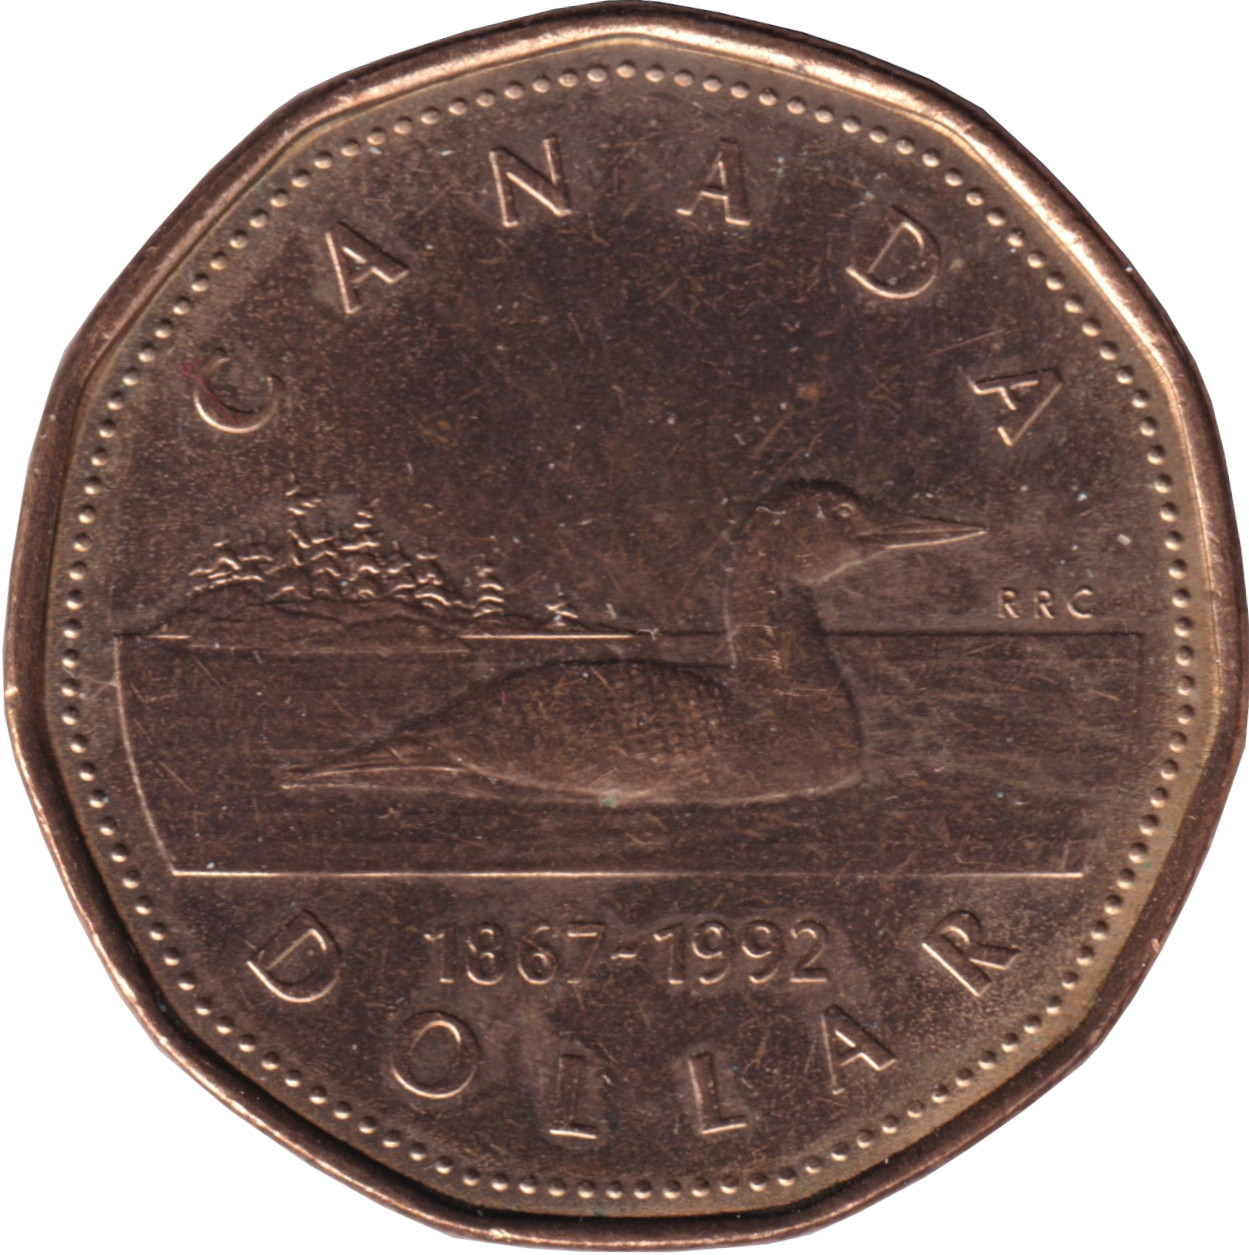 1 dollar - Confédération - 125 years